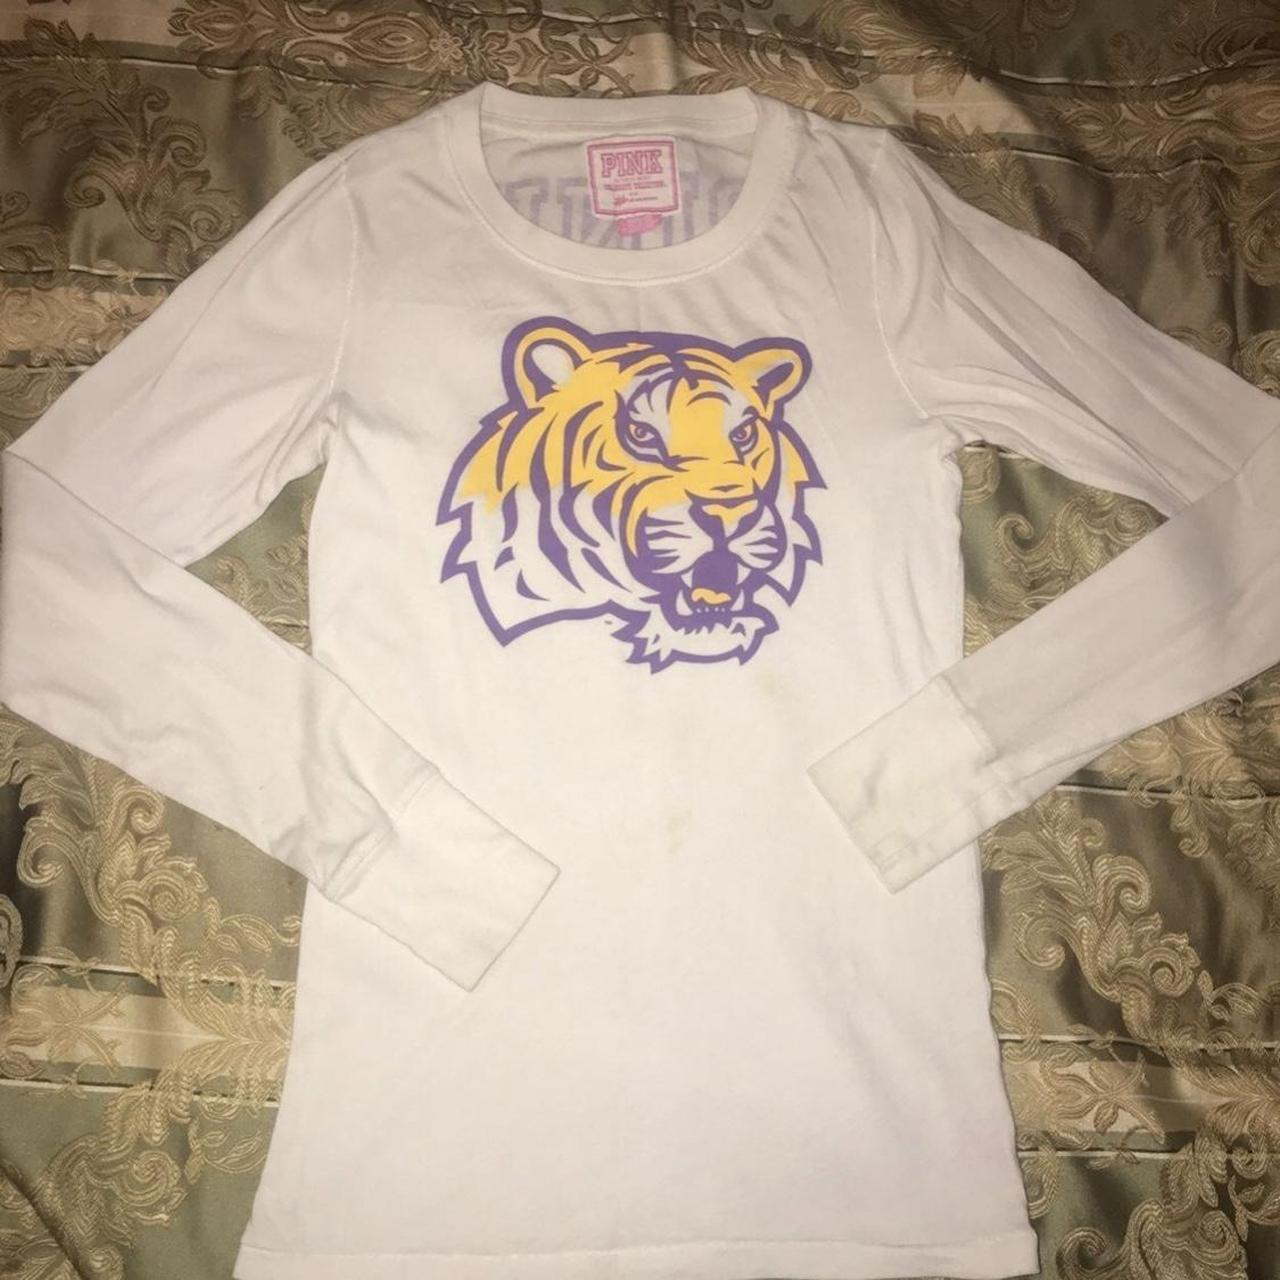 Victoria's Secret Tiger T-Shirts